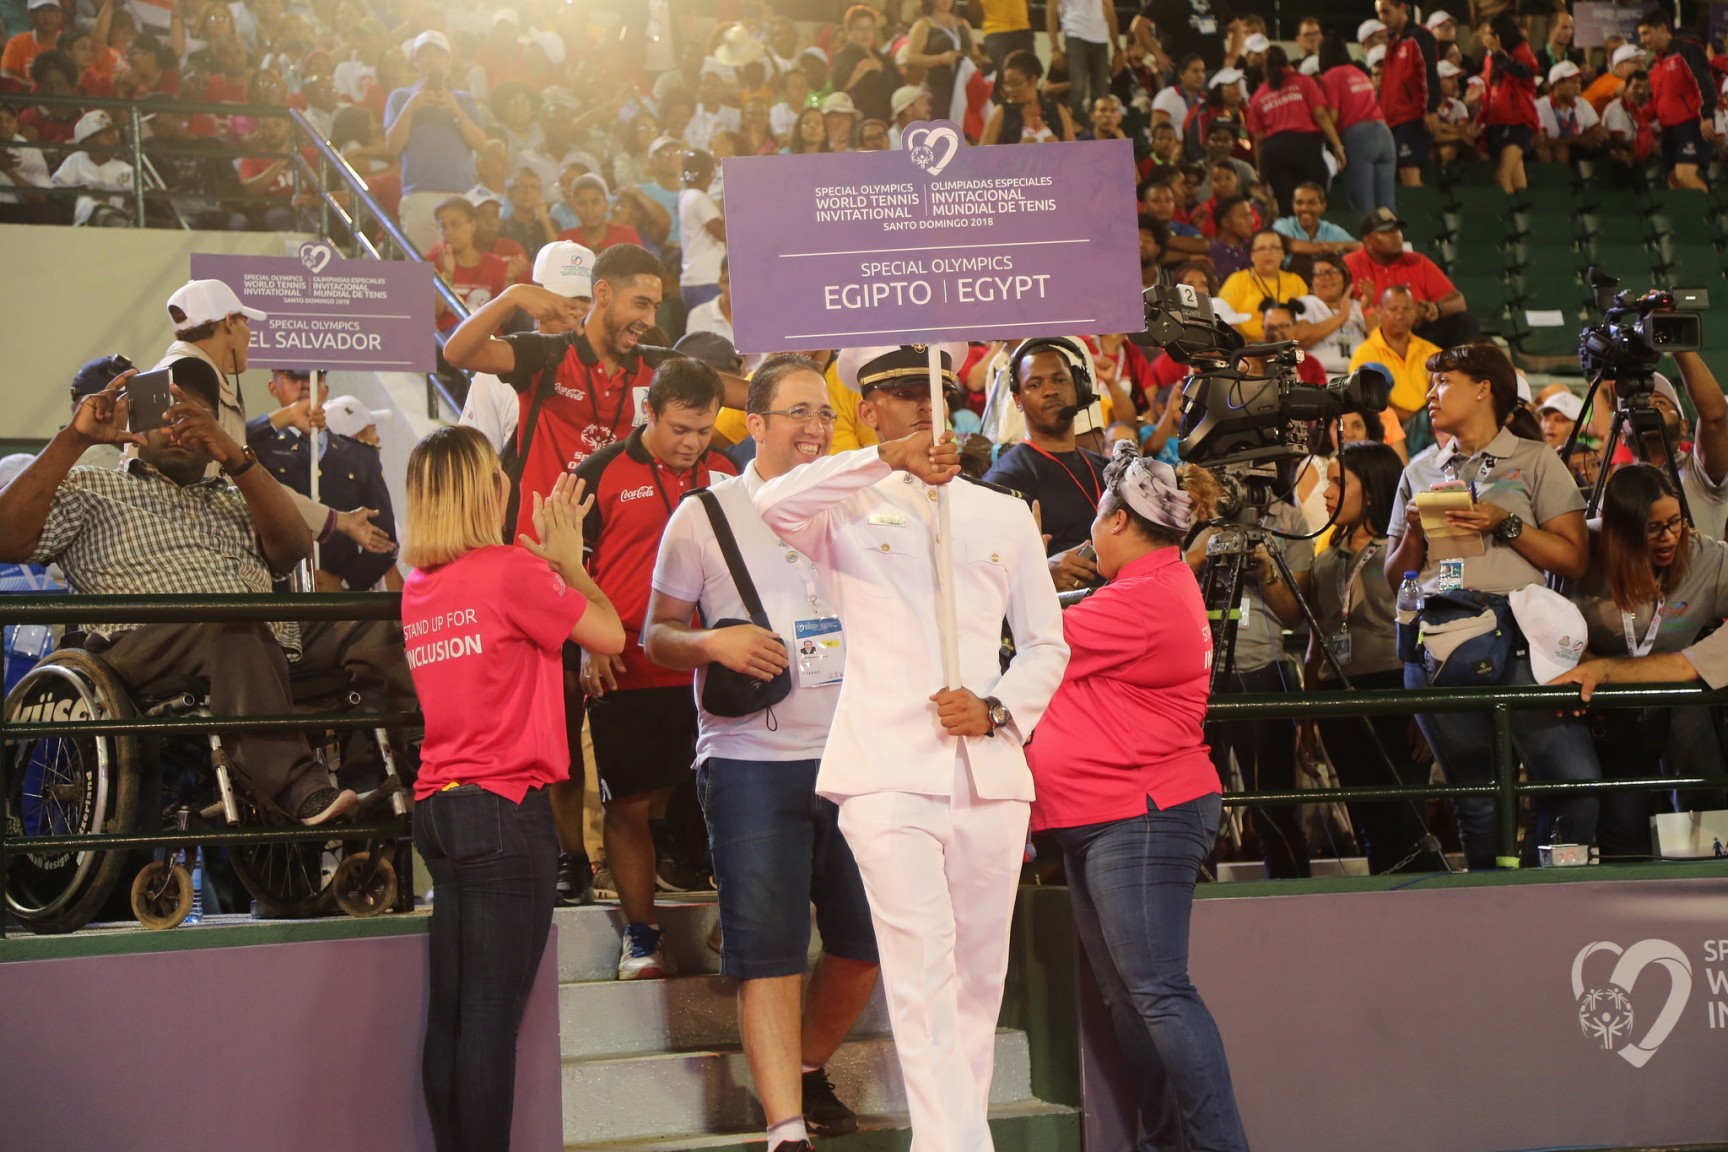 REPÚBLICA DOMINICANA: Prensa egipcia resalta celebración Invitacional Mundial de Tenis de Olimpiadas Especiales, en República Dominicana